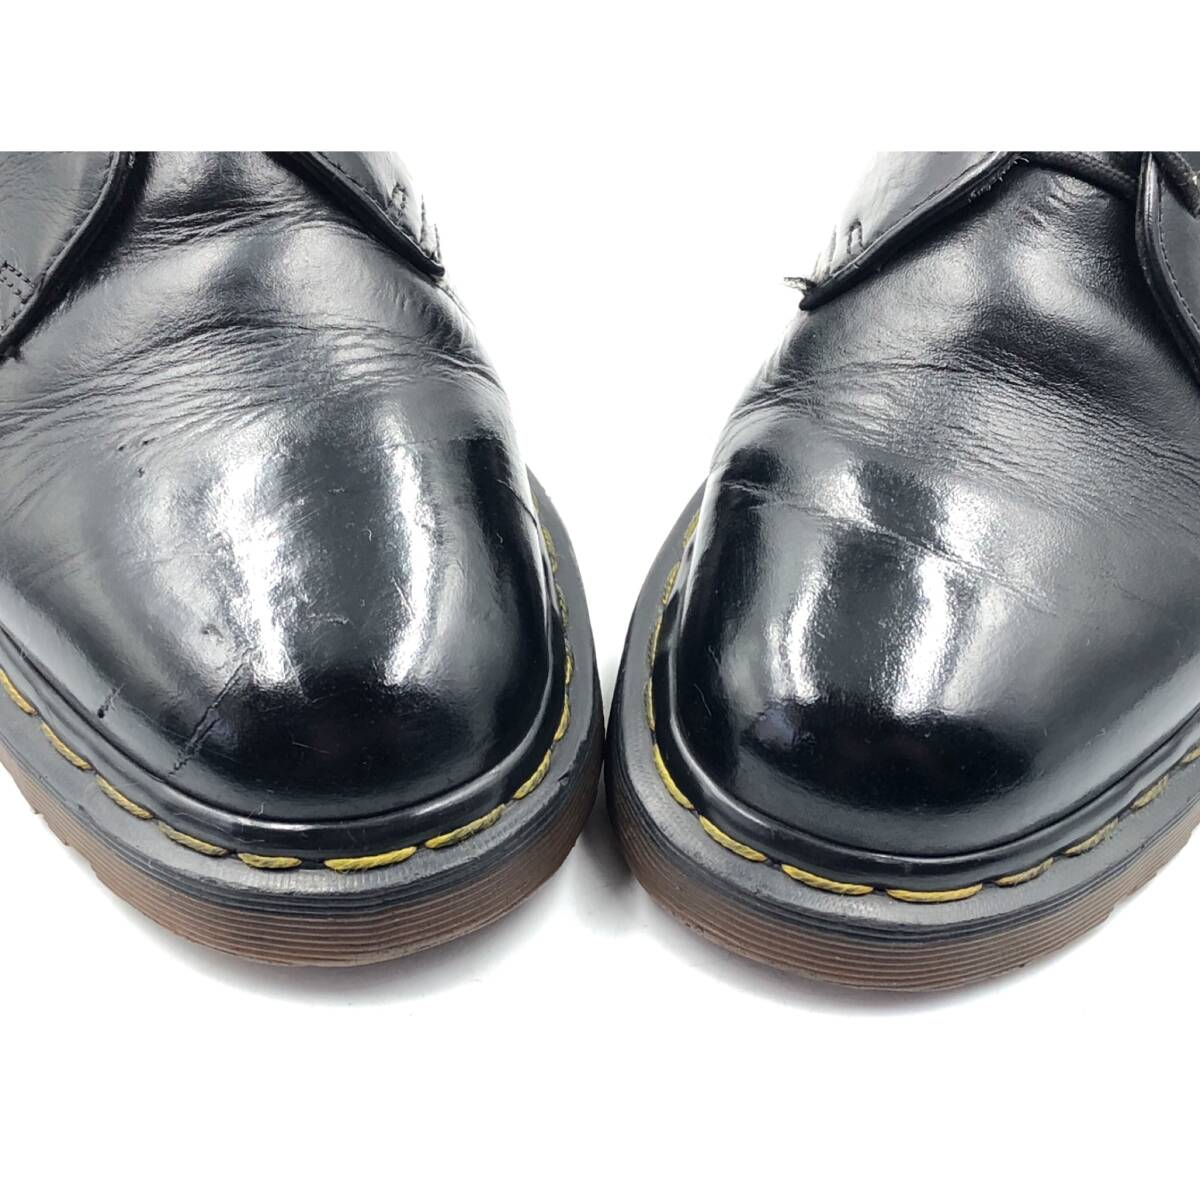 即決 Dr.Martens ドクターマーチン 23cm UK5 1461/59 メンズ レザーシューズ 3ホール プレーントゥ 黒 ブラック 革靴 皮靴 ビジネス_画像8